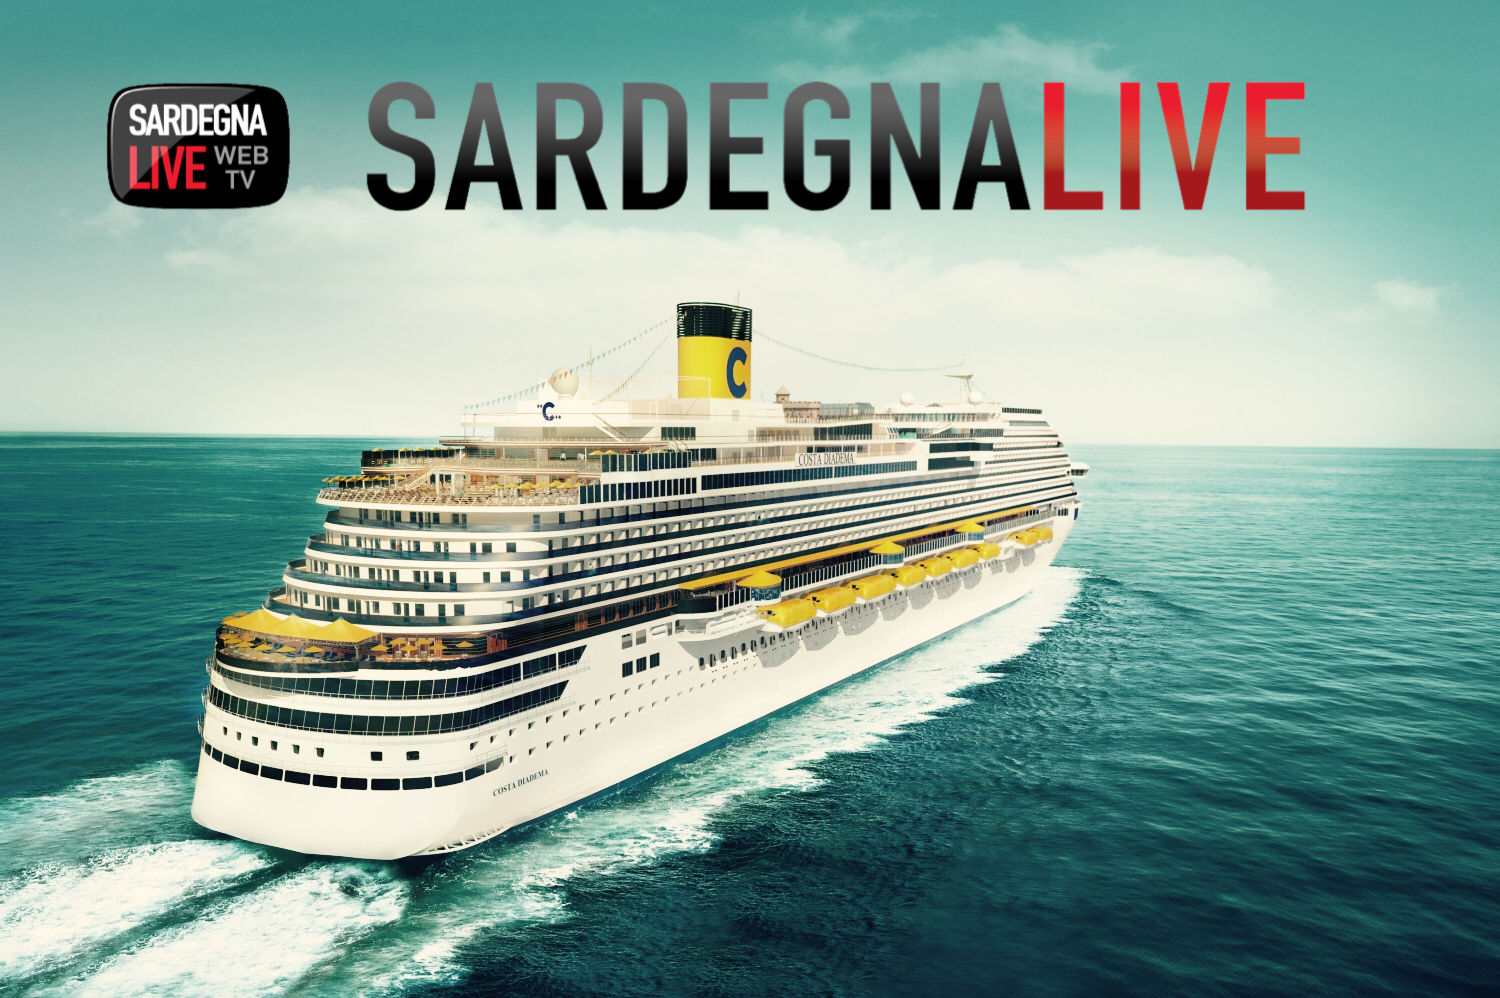 Musica & vinci una crociera con Sardegna Live